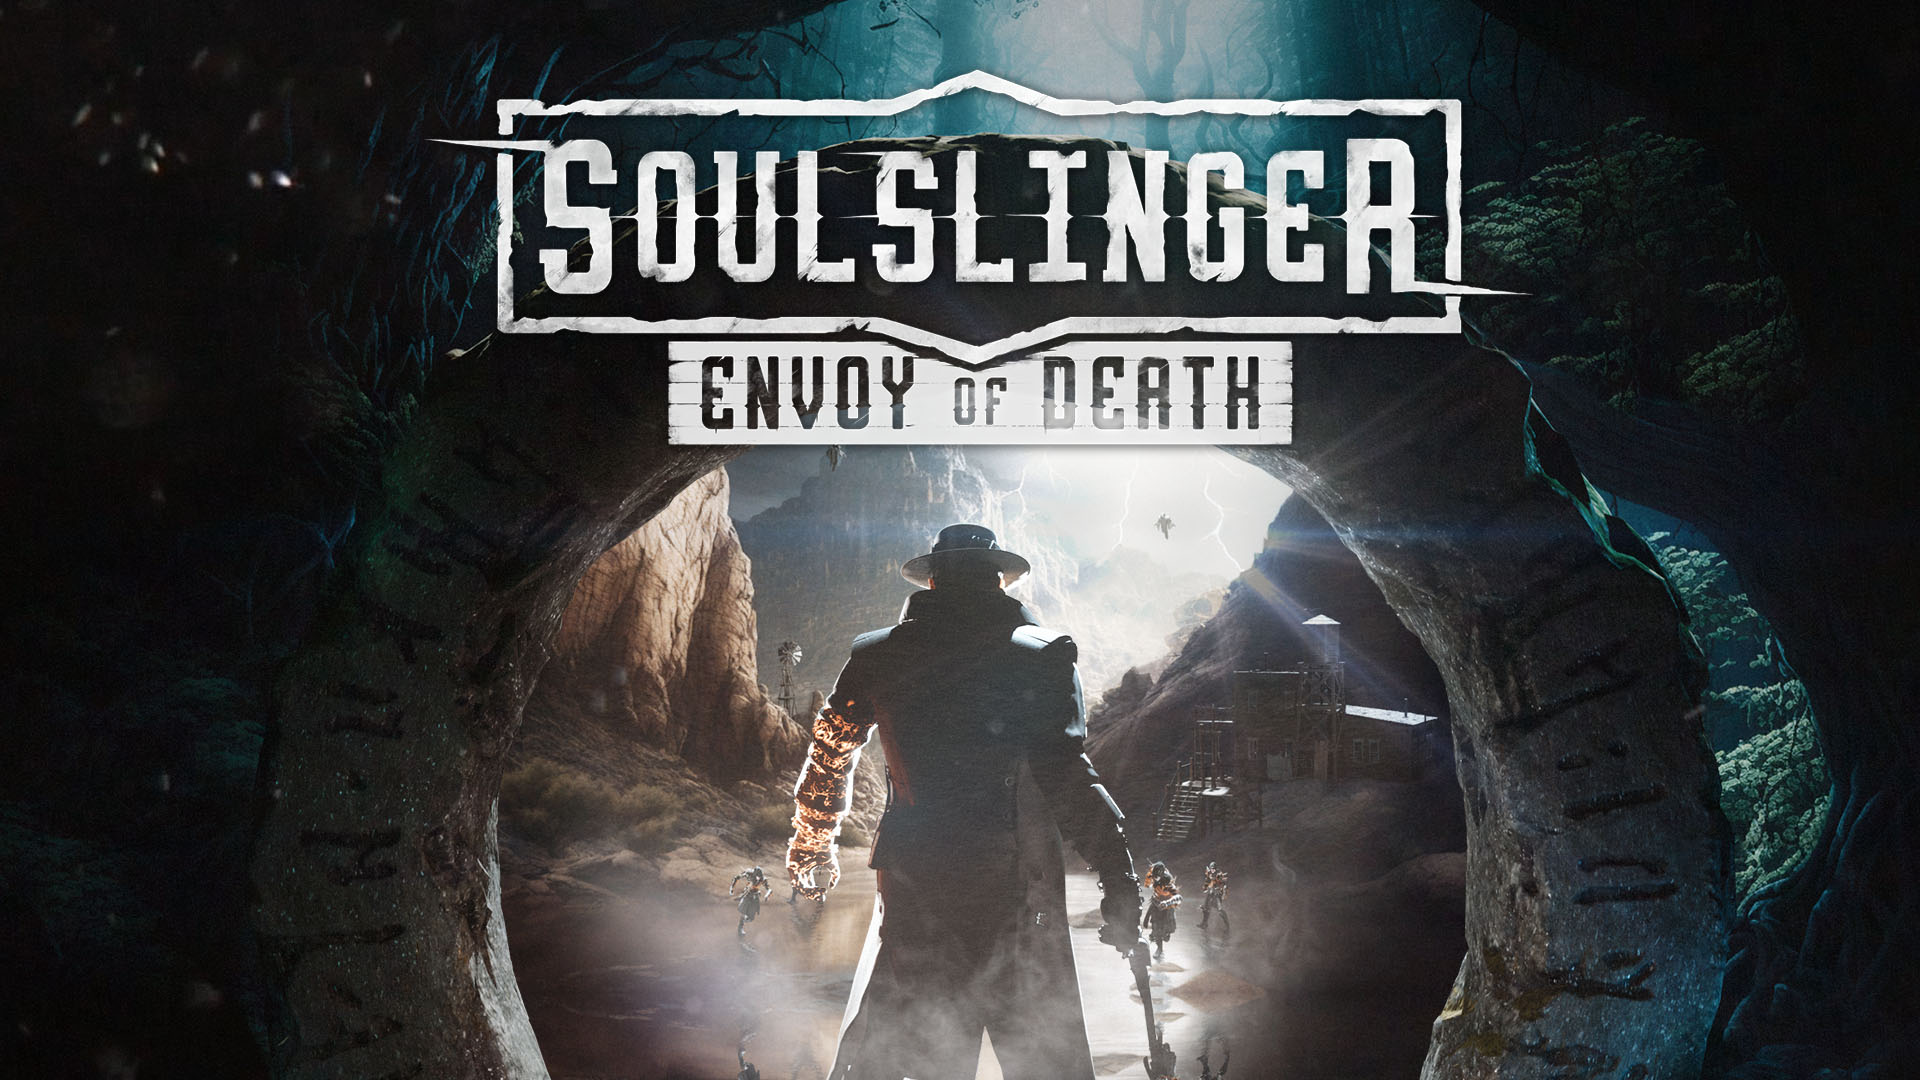 jaquette du jeu vidéo Soulslinger: Envoy of Death